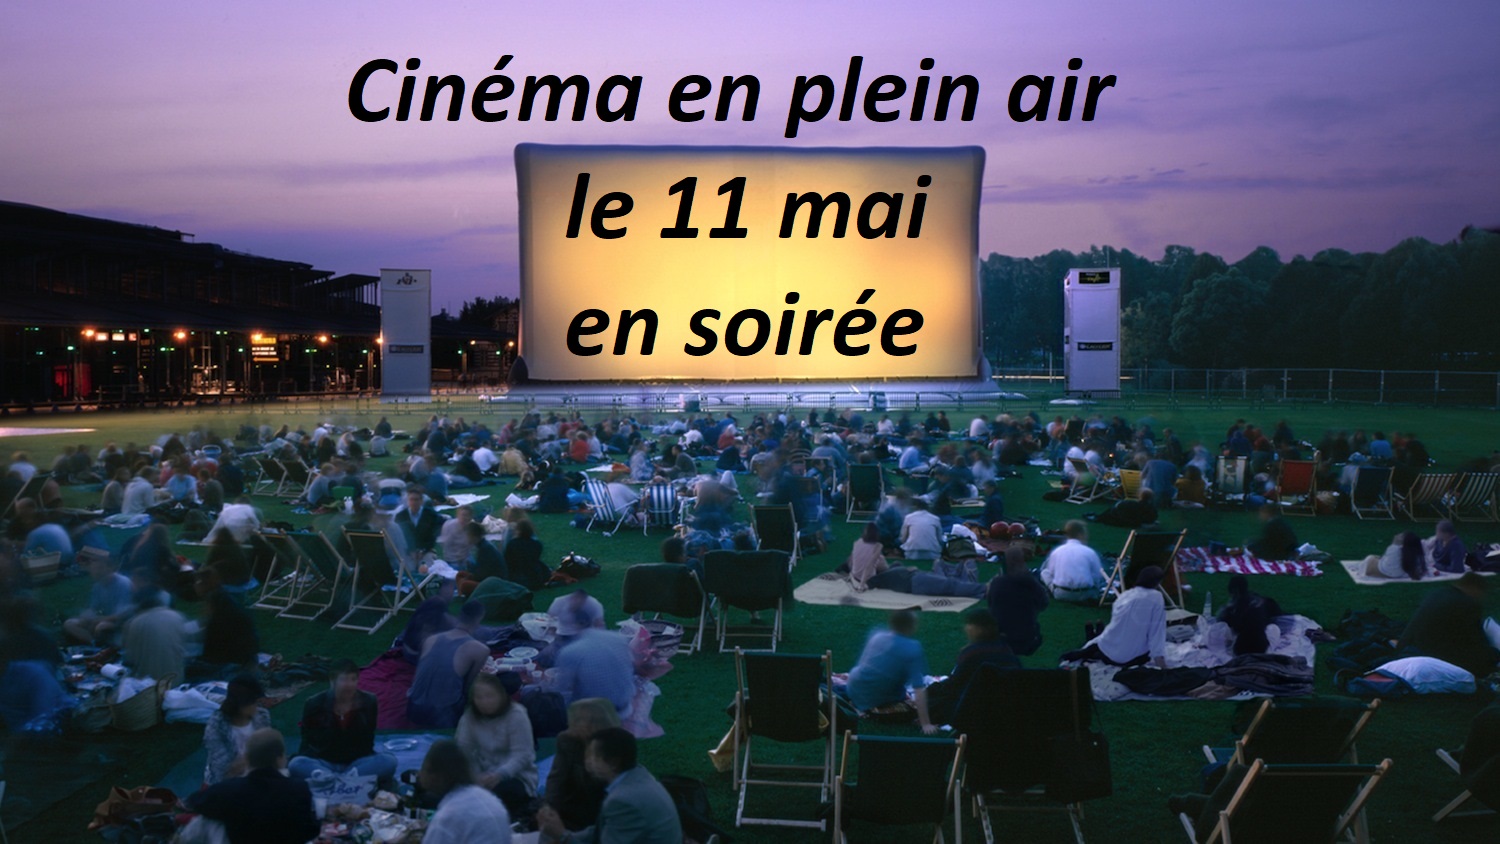 Cinema plein air date